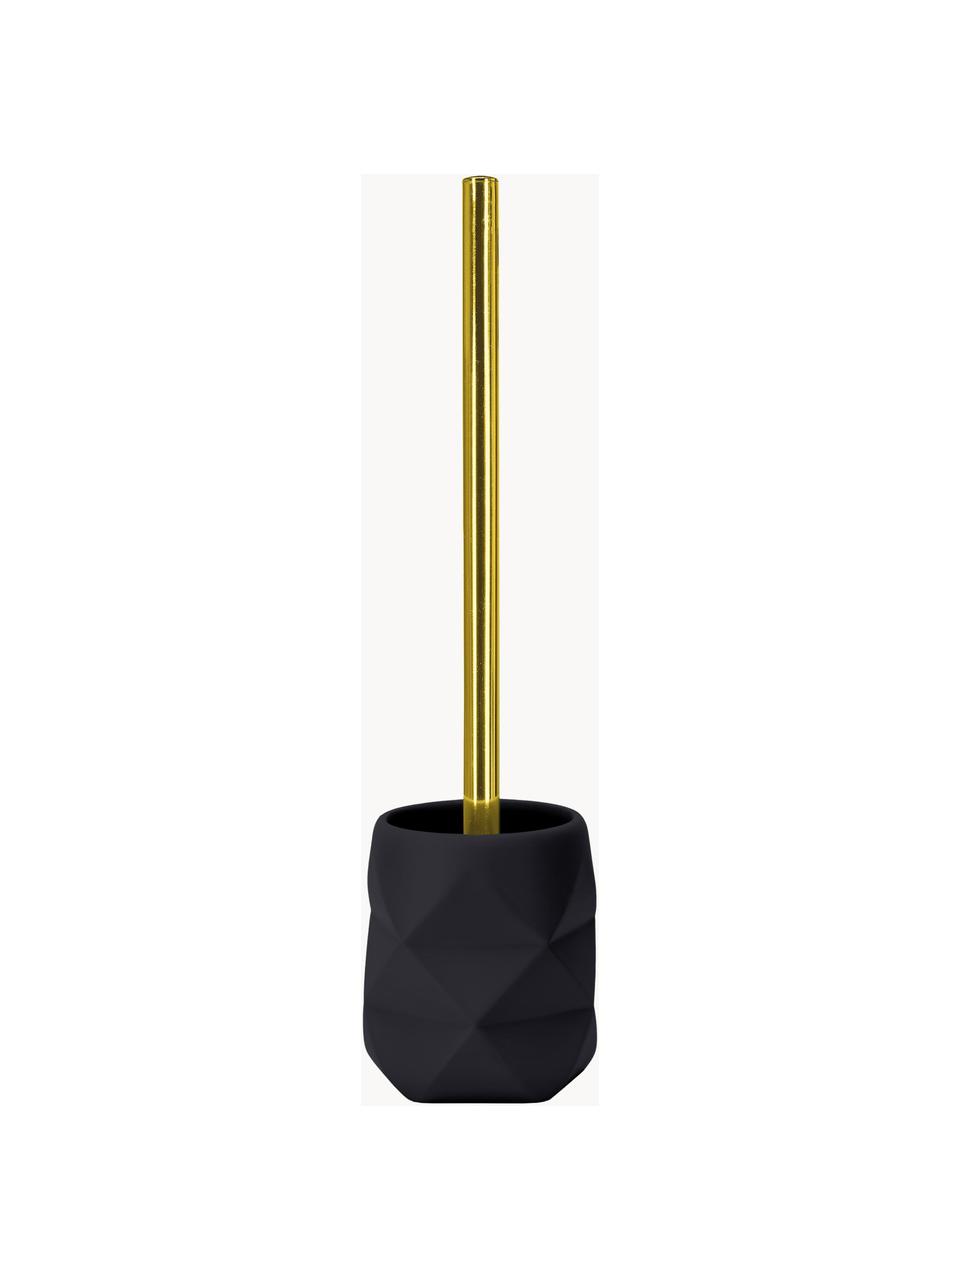 Brosse pour WC Crackle, Noir, couleur dorée, Ø 11 x haut. 39 cm